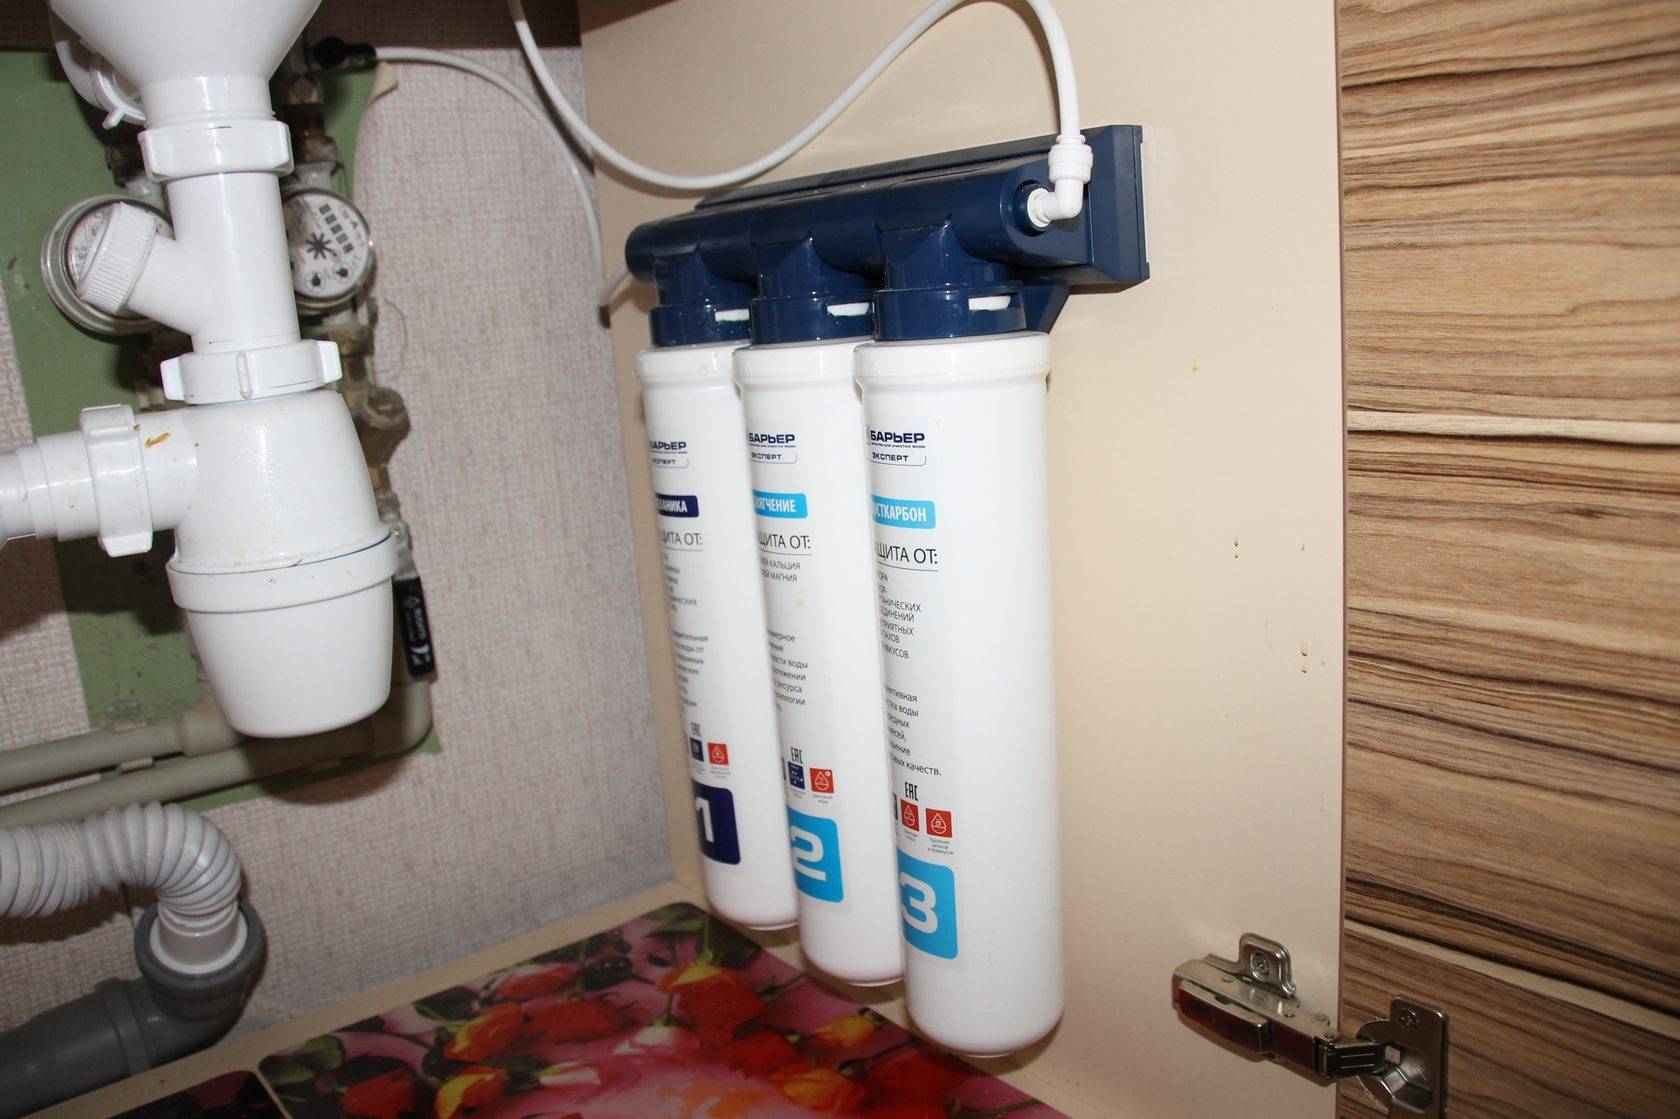 Проточный фильтр для очистки воды в квартире: какой лучше, виды, особенности